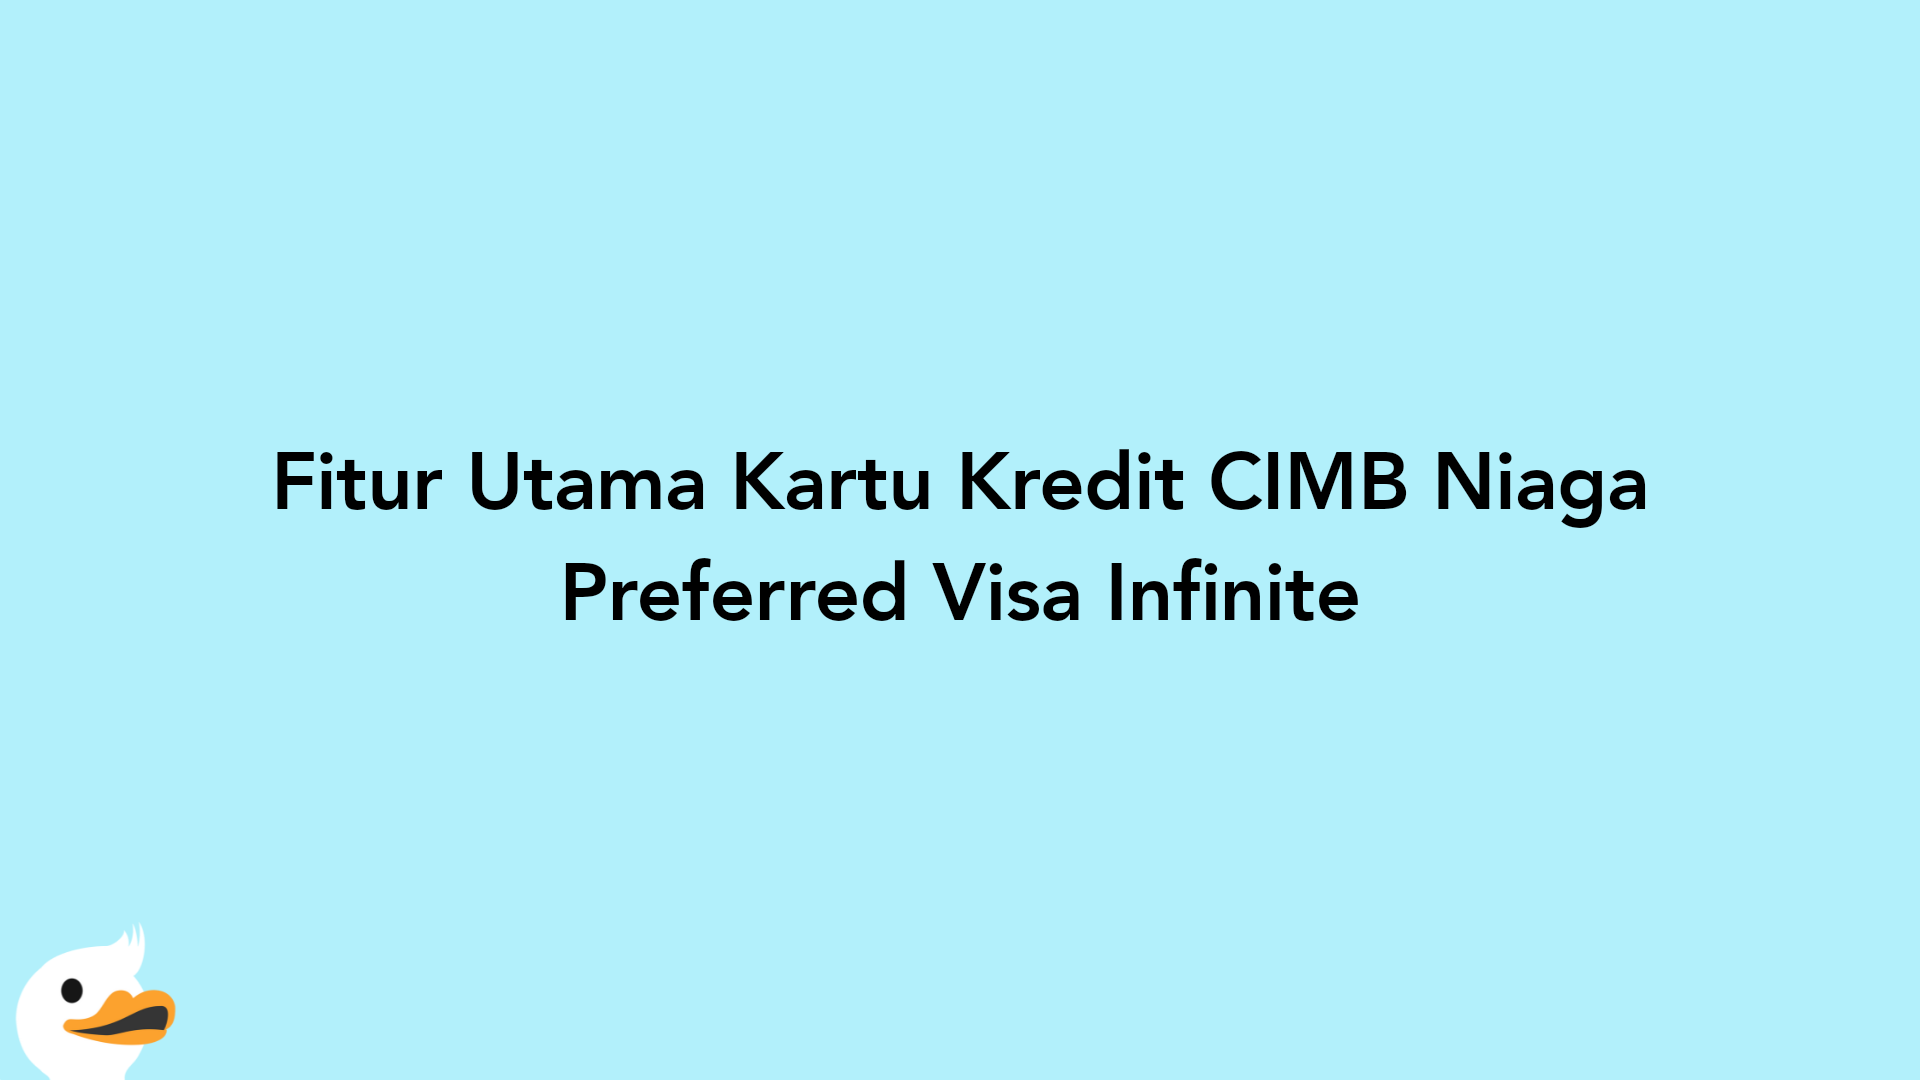 Fitur Utama Kartu Kredit CIMB Niaga Preferred Visa Infinite